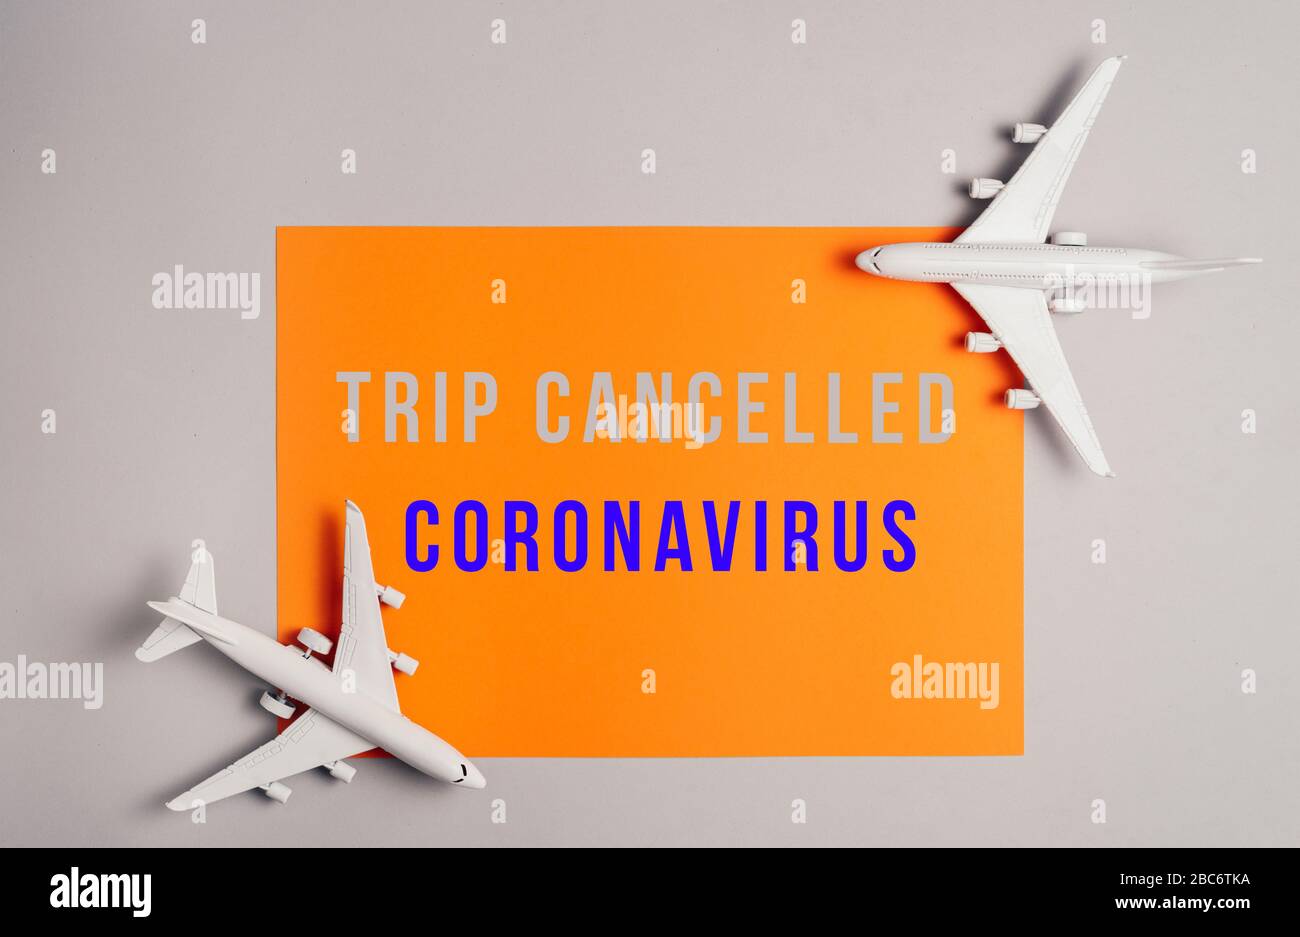 Nicht reisen, stoppen Coronavirus. Stornierte Flüge auf dem Flughafen. Ausbruch kovide 19-Virus-Pandemie, betrifft den Lufttransport. Europa ist unter Quarantäne gestellt, Abfahrtsverbot. Stockfoto